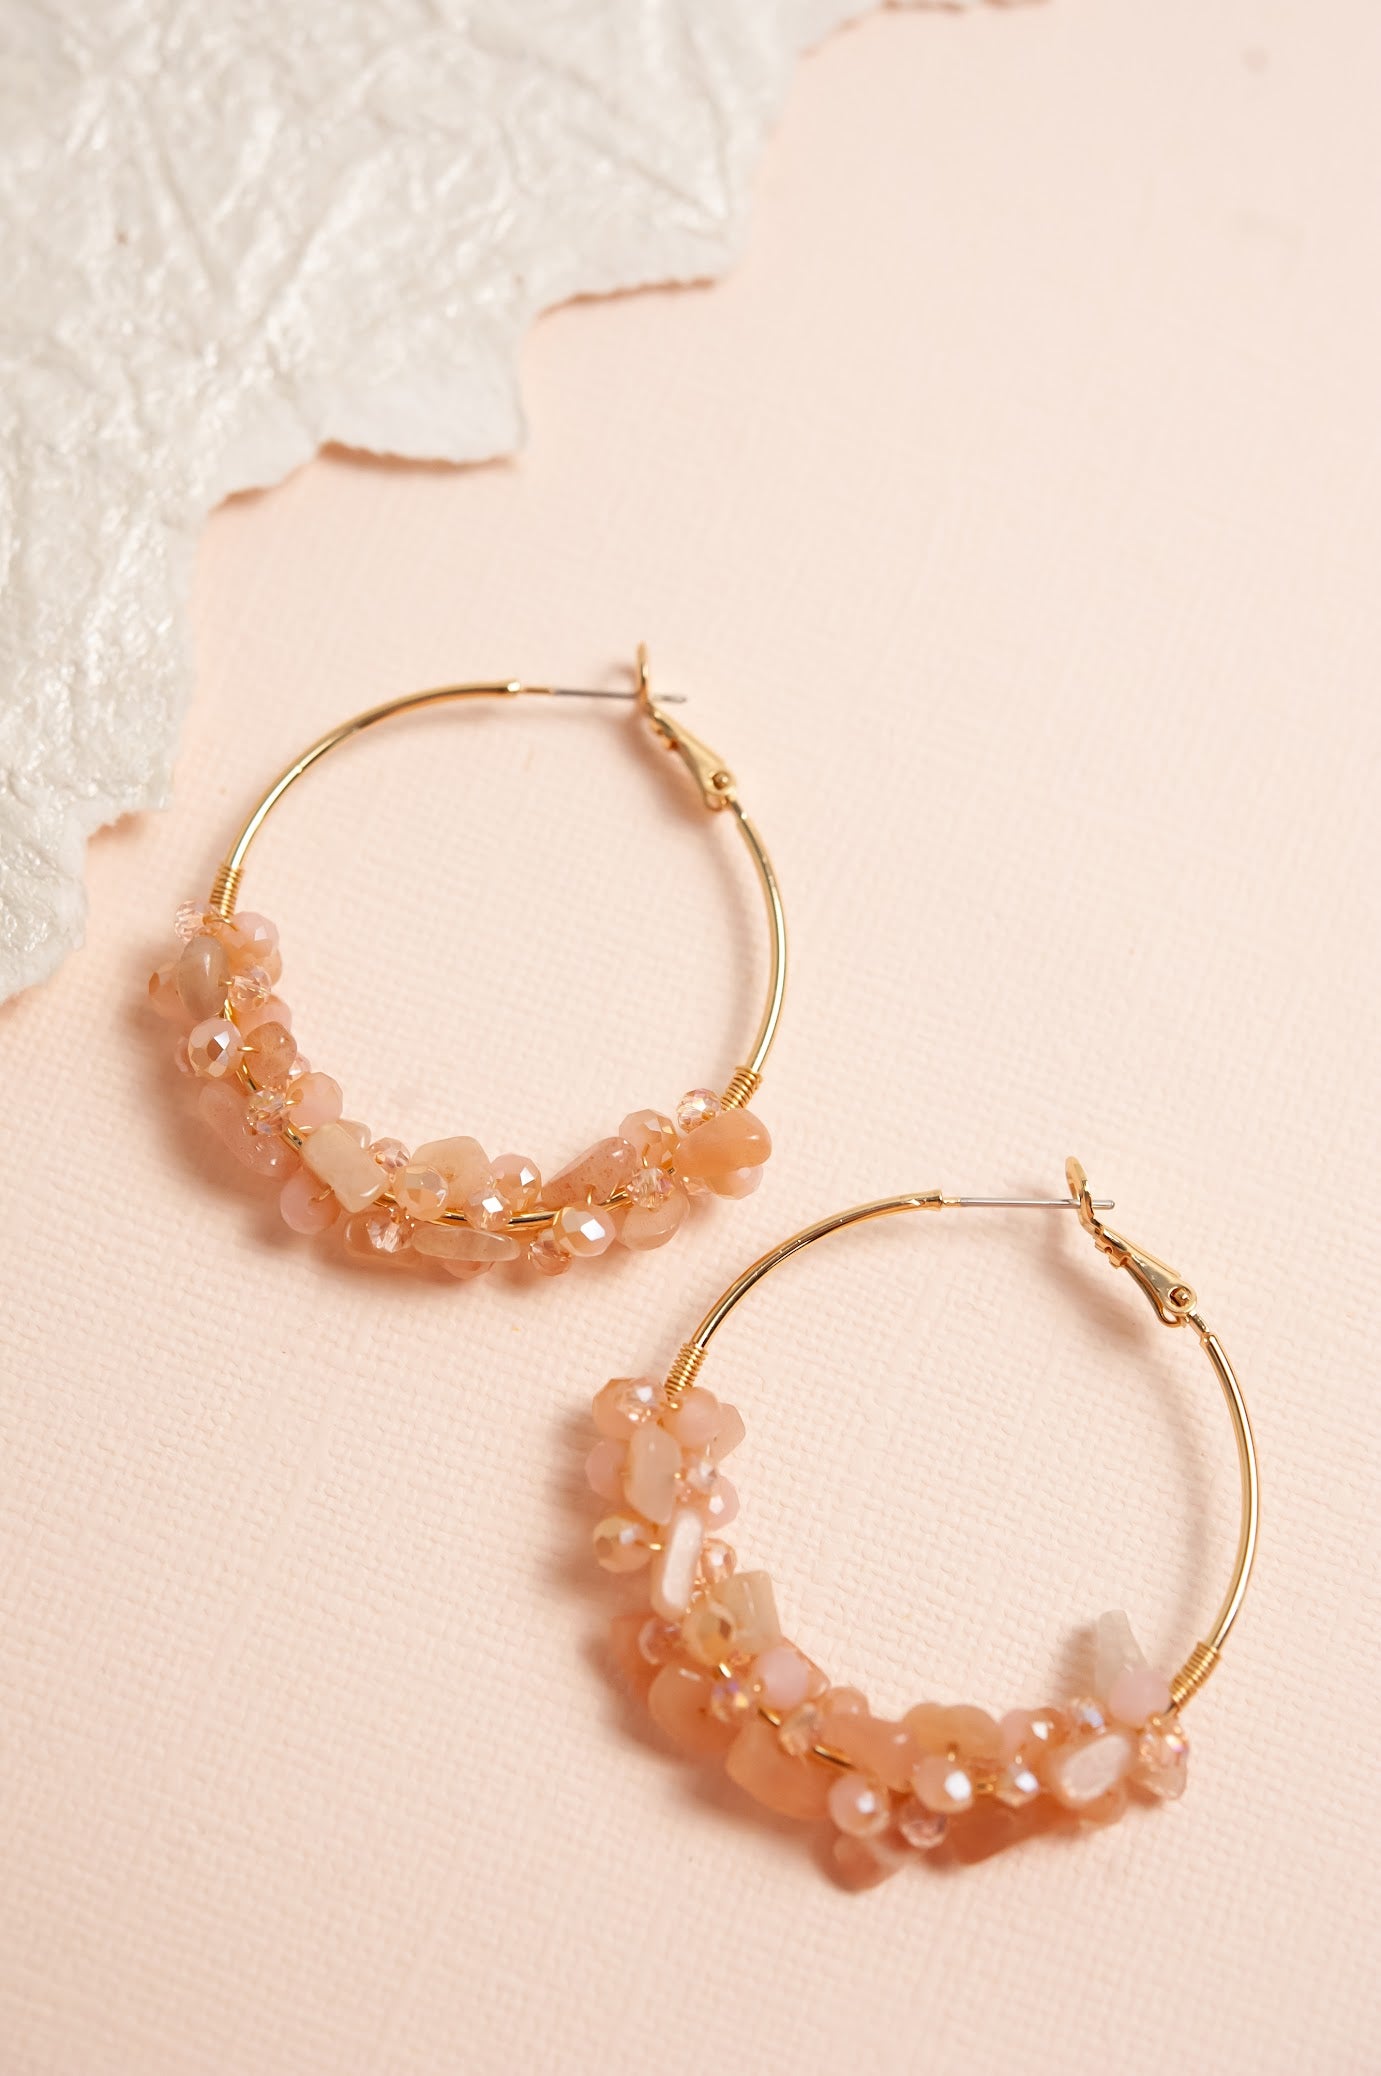 Mindy River Pebble Hoop Earrings | 4 Colors | Natural Pebble Stone Beads | Thin Gold Hoops | Boho Chic Earrings